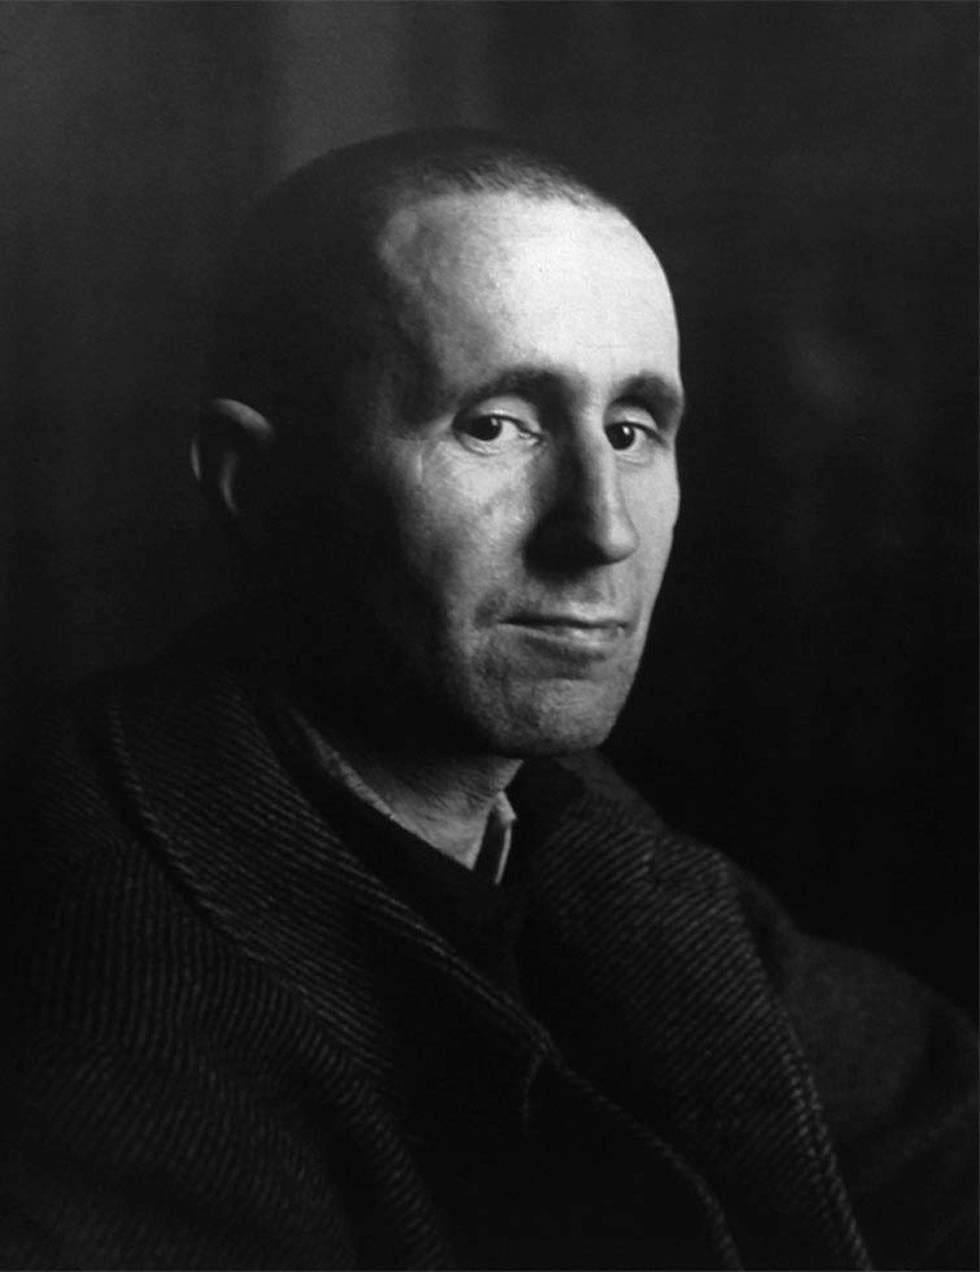 Portrait of Bertold Brecht